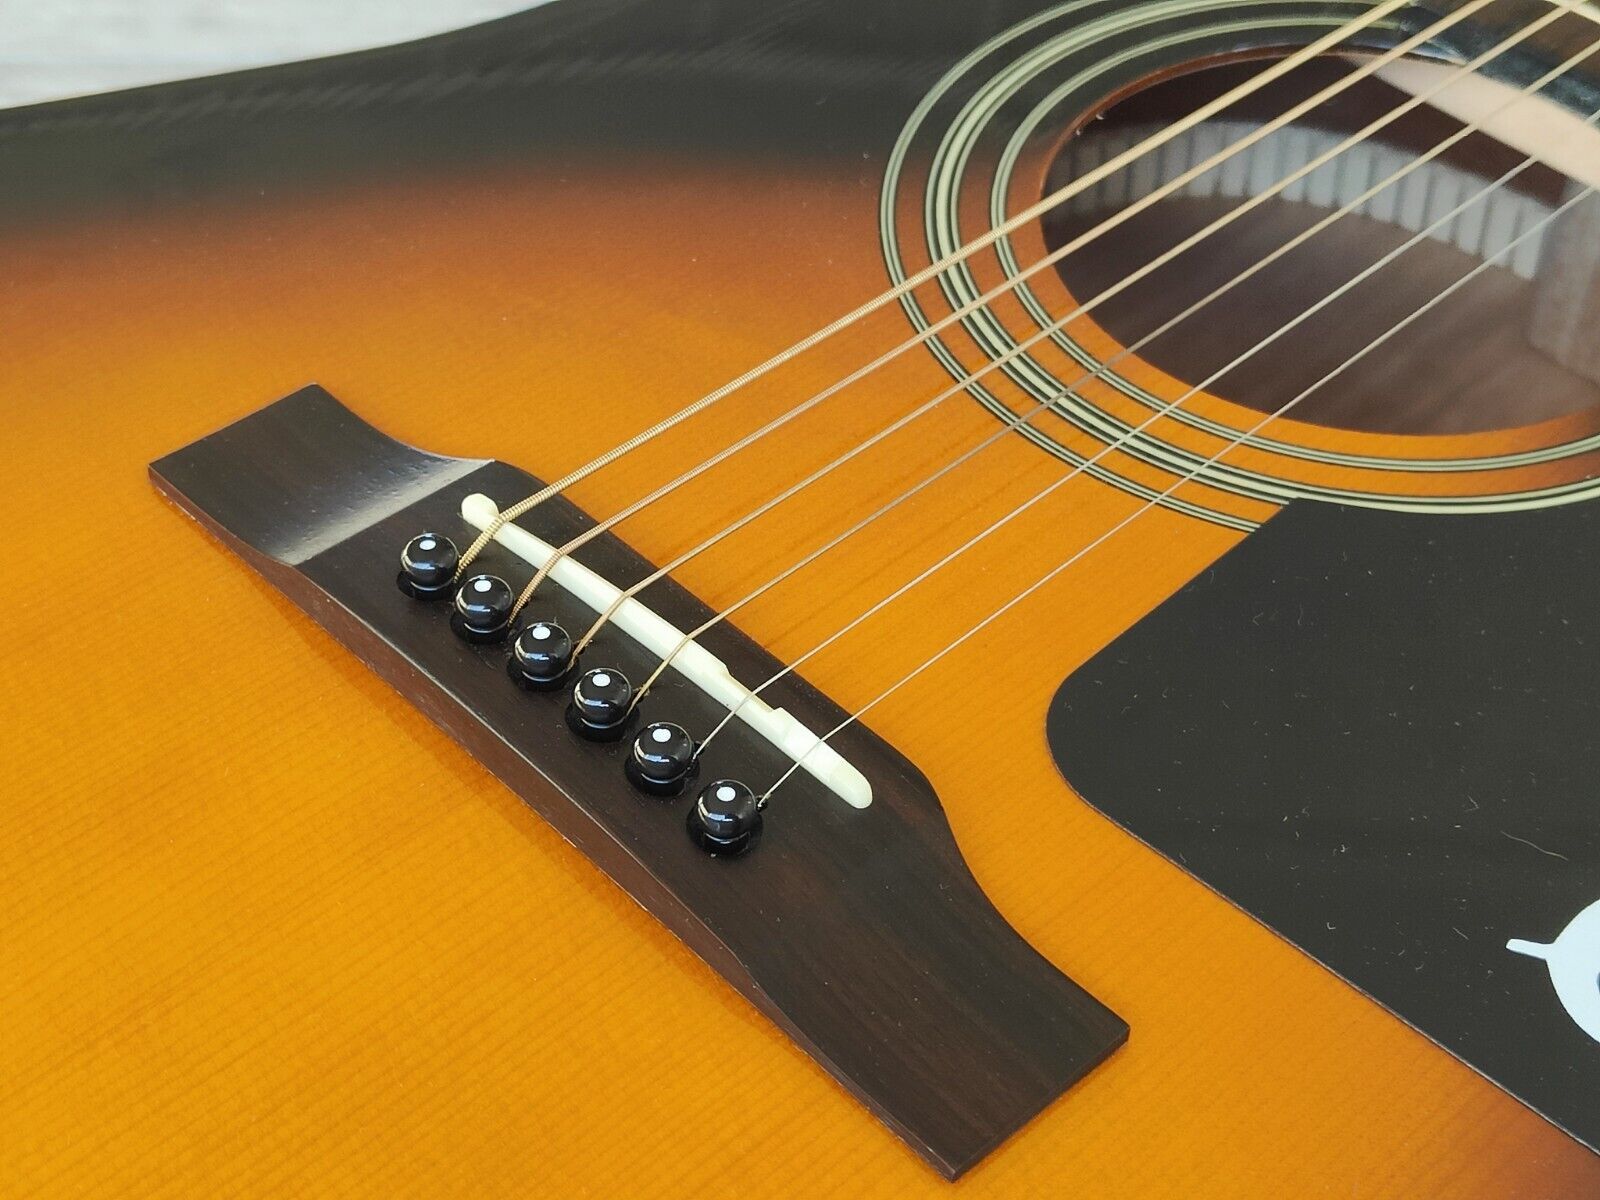 2008 Epiphone AJ-100/VS Acoustic Guitar (Vintage Sunburst)